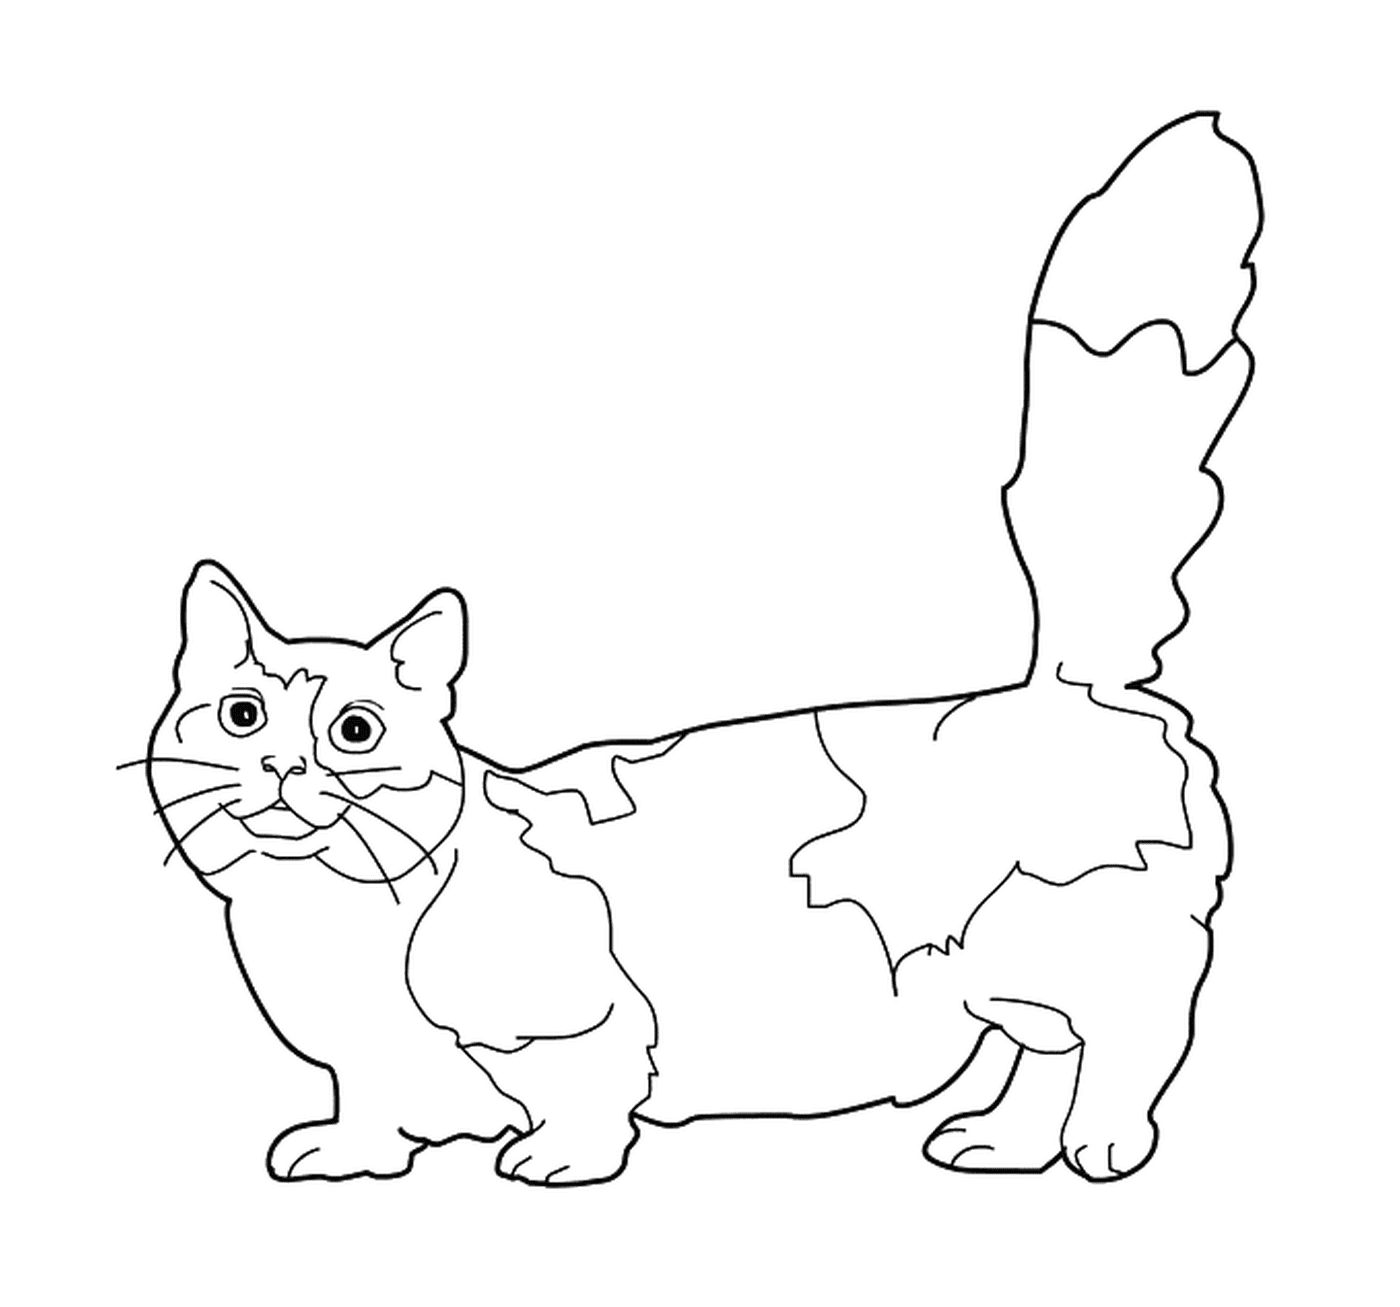  A Munchkin, a cat with short legs 